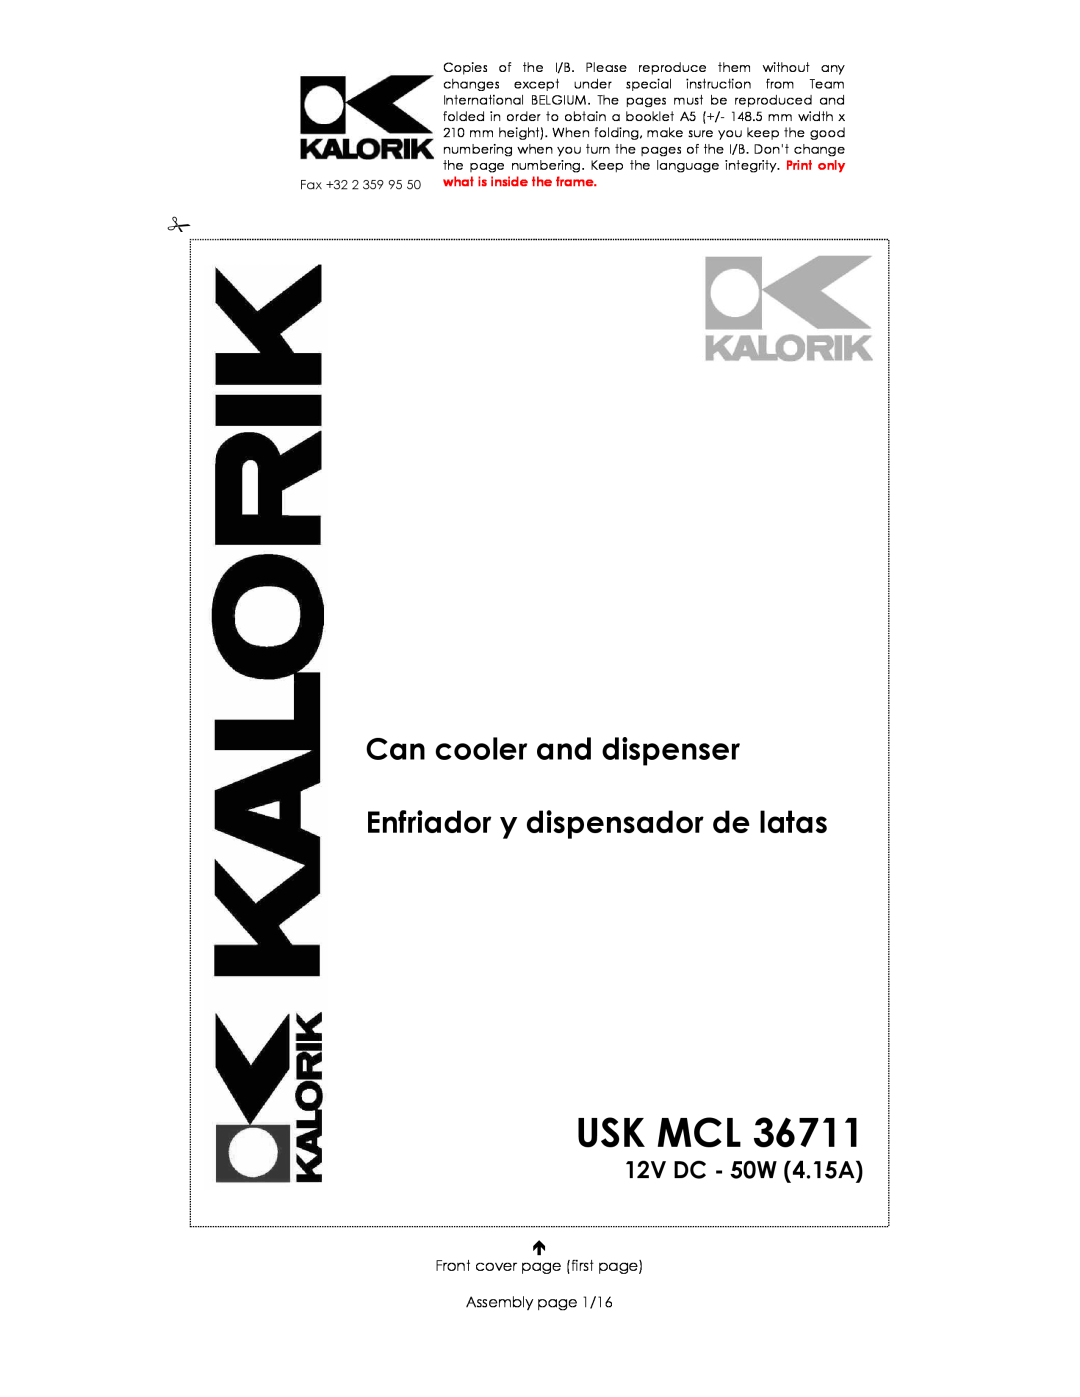 Kalorik USK MCL 36711 manual Usk Mcl, Can cooler and dispenser, Enfriador y dispensador de latas, 12V DC - 50W 4.15A 